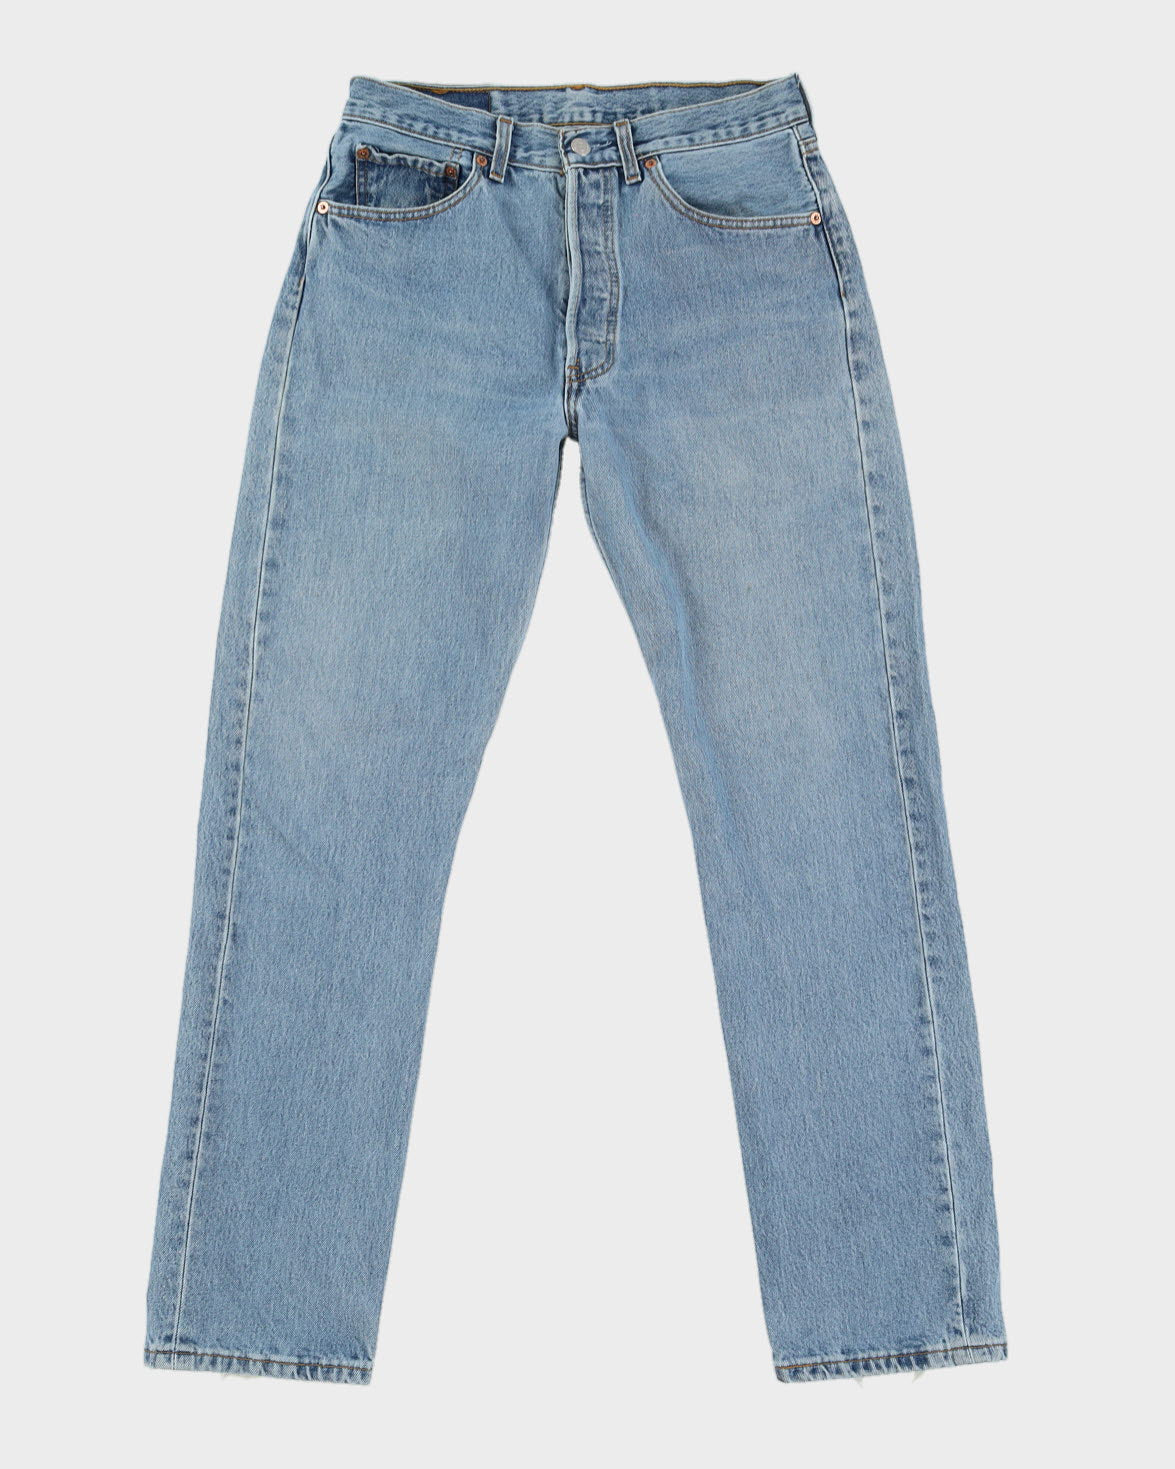 Vintage Levi's 501s Light Jeans - W30 L322